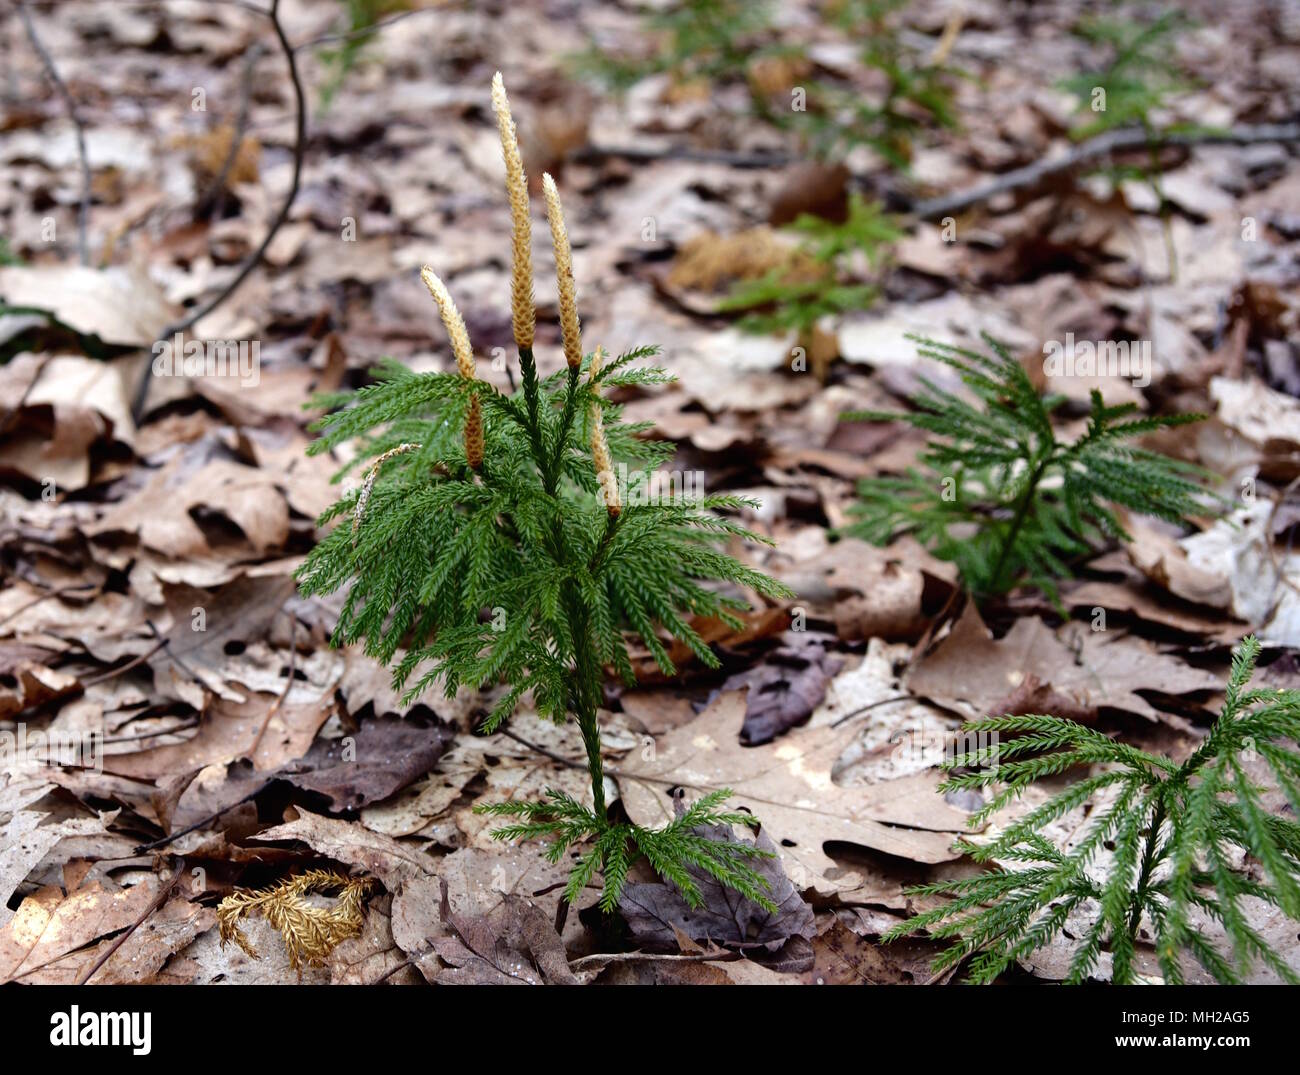 Un fan clubmoss avec avec ses feuilles vertes et fleurs marron clair dans une forêt au printemps. Banque D'Images